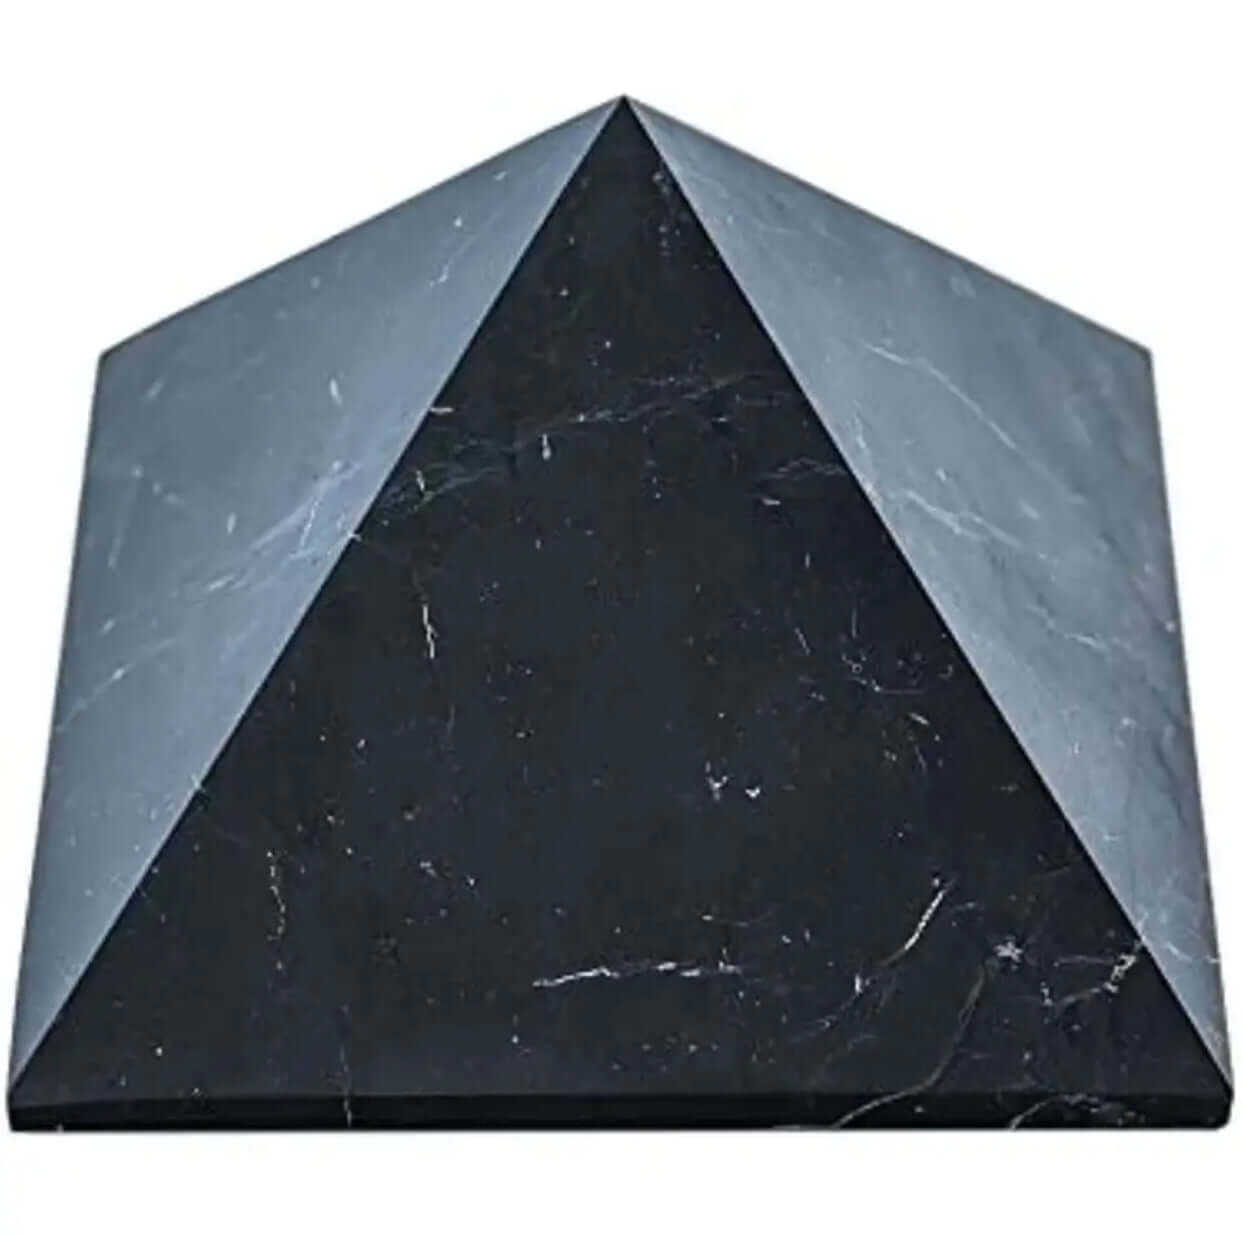 Véritable Pyramide de Shungite - Source d'Énergie et de Protection